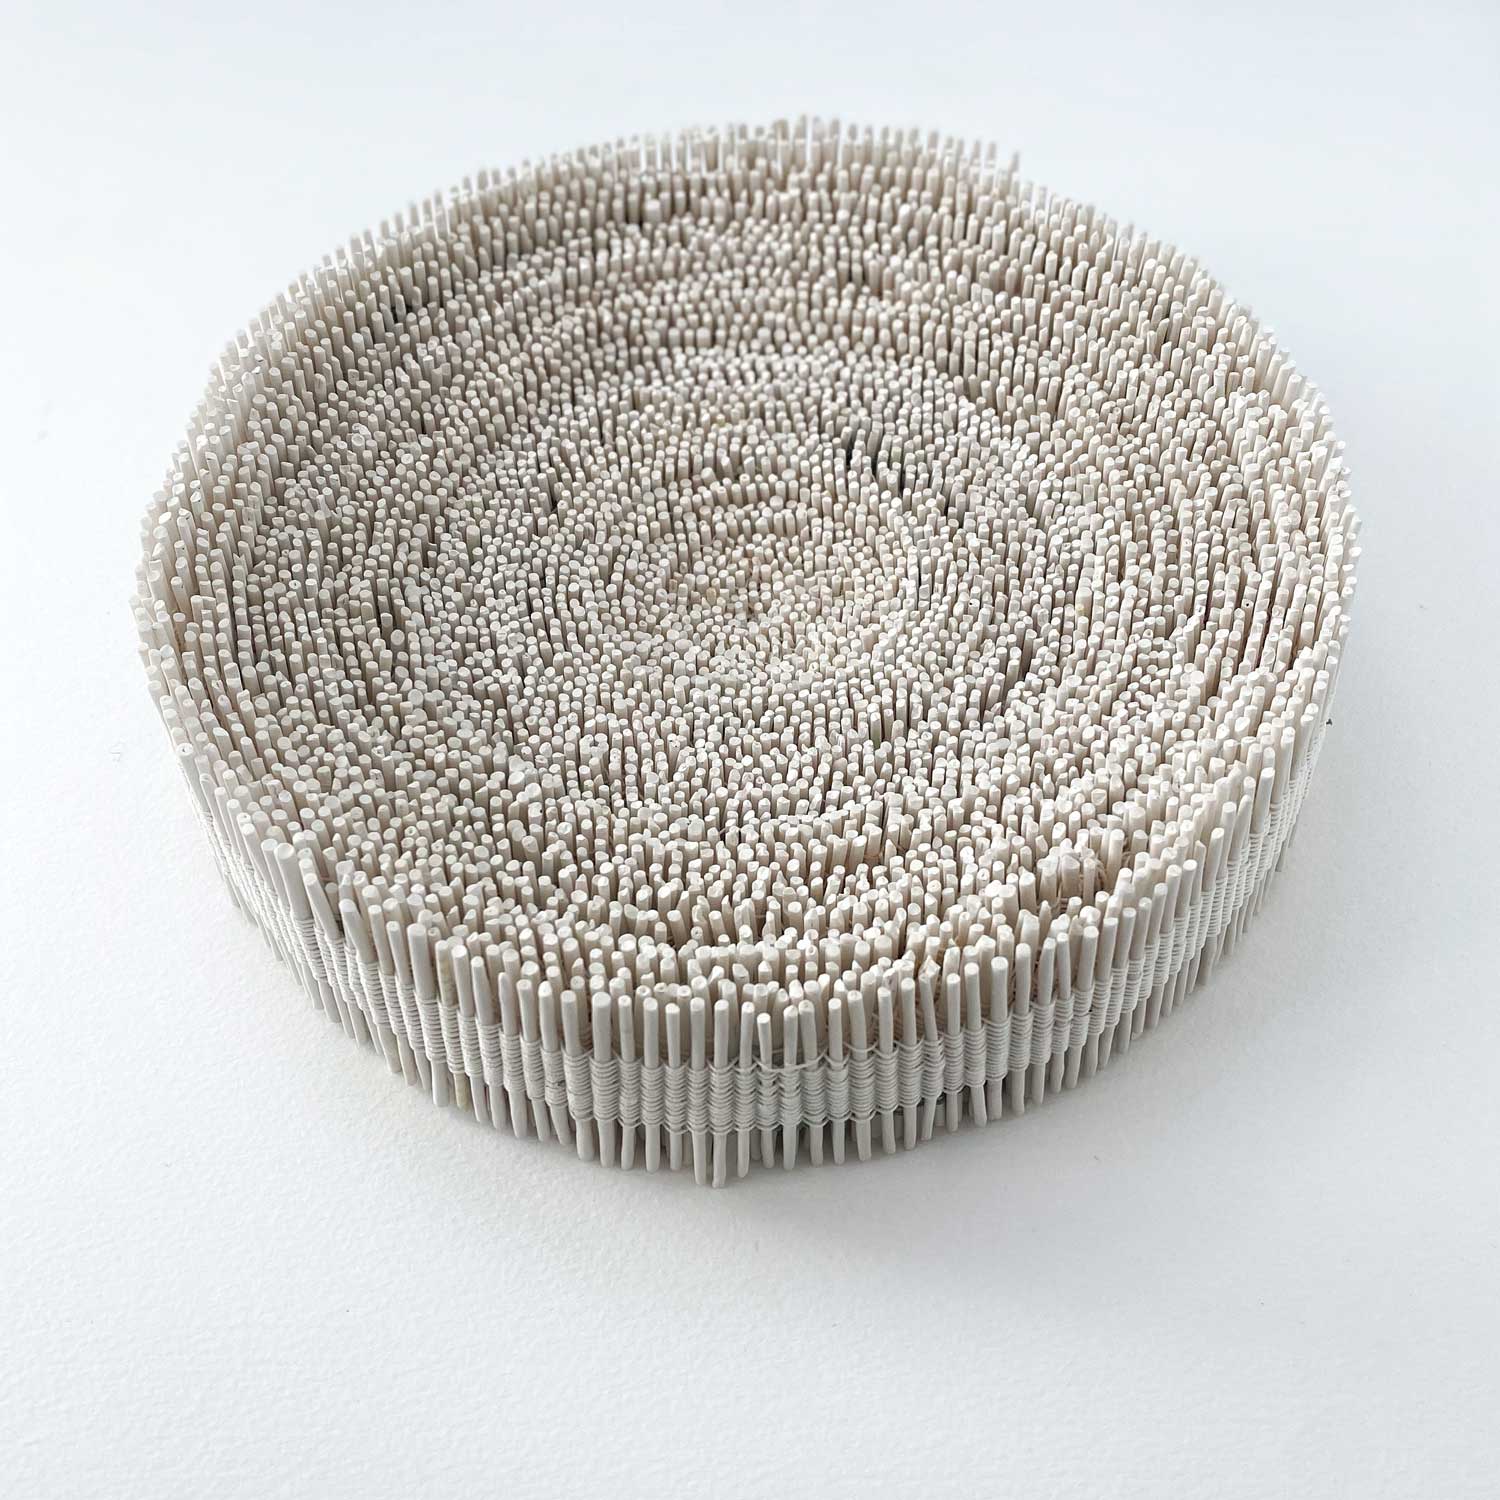 Ruban - Porcelaine, lin, acrylique - 6 x 26,5 cm - 2022 